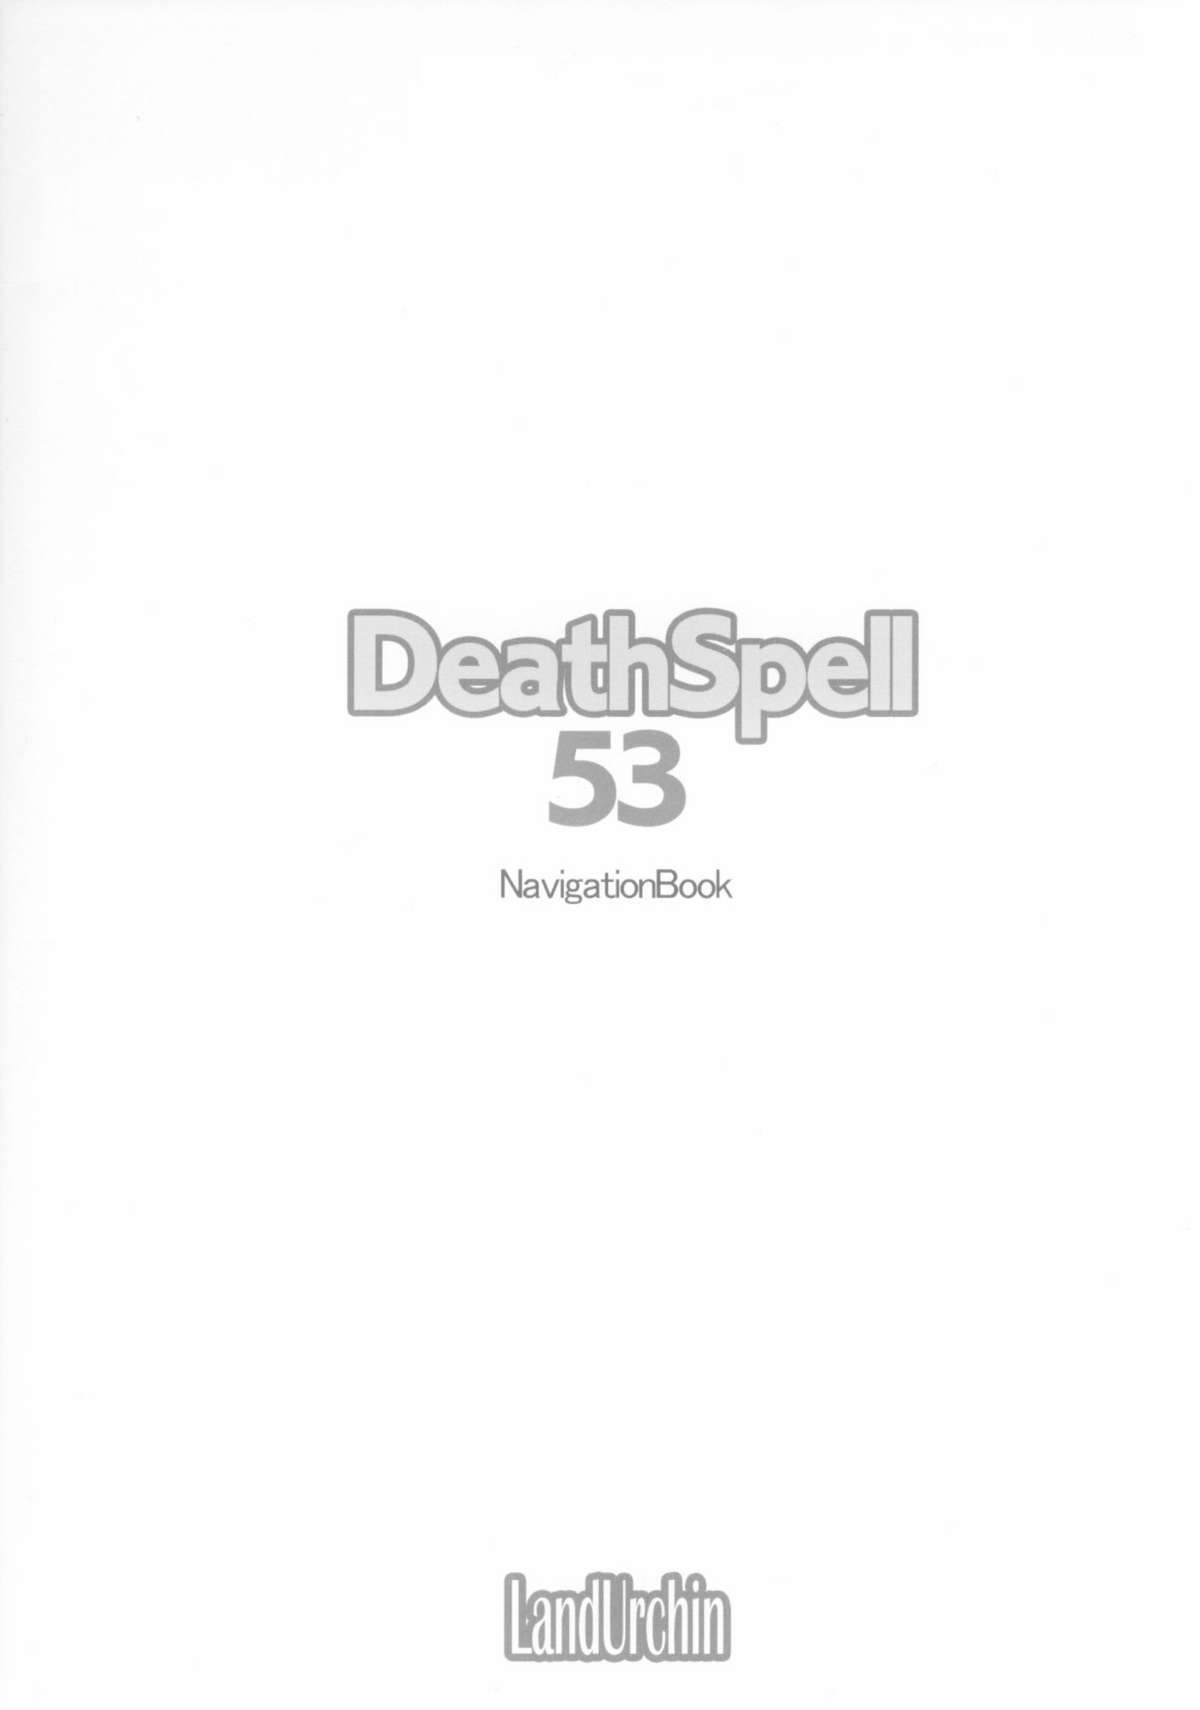 [Land Urchin (千鐘, ゴン平八)] DeathSpell 53 NavigationBook